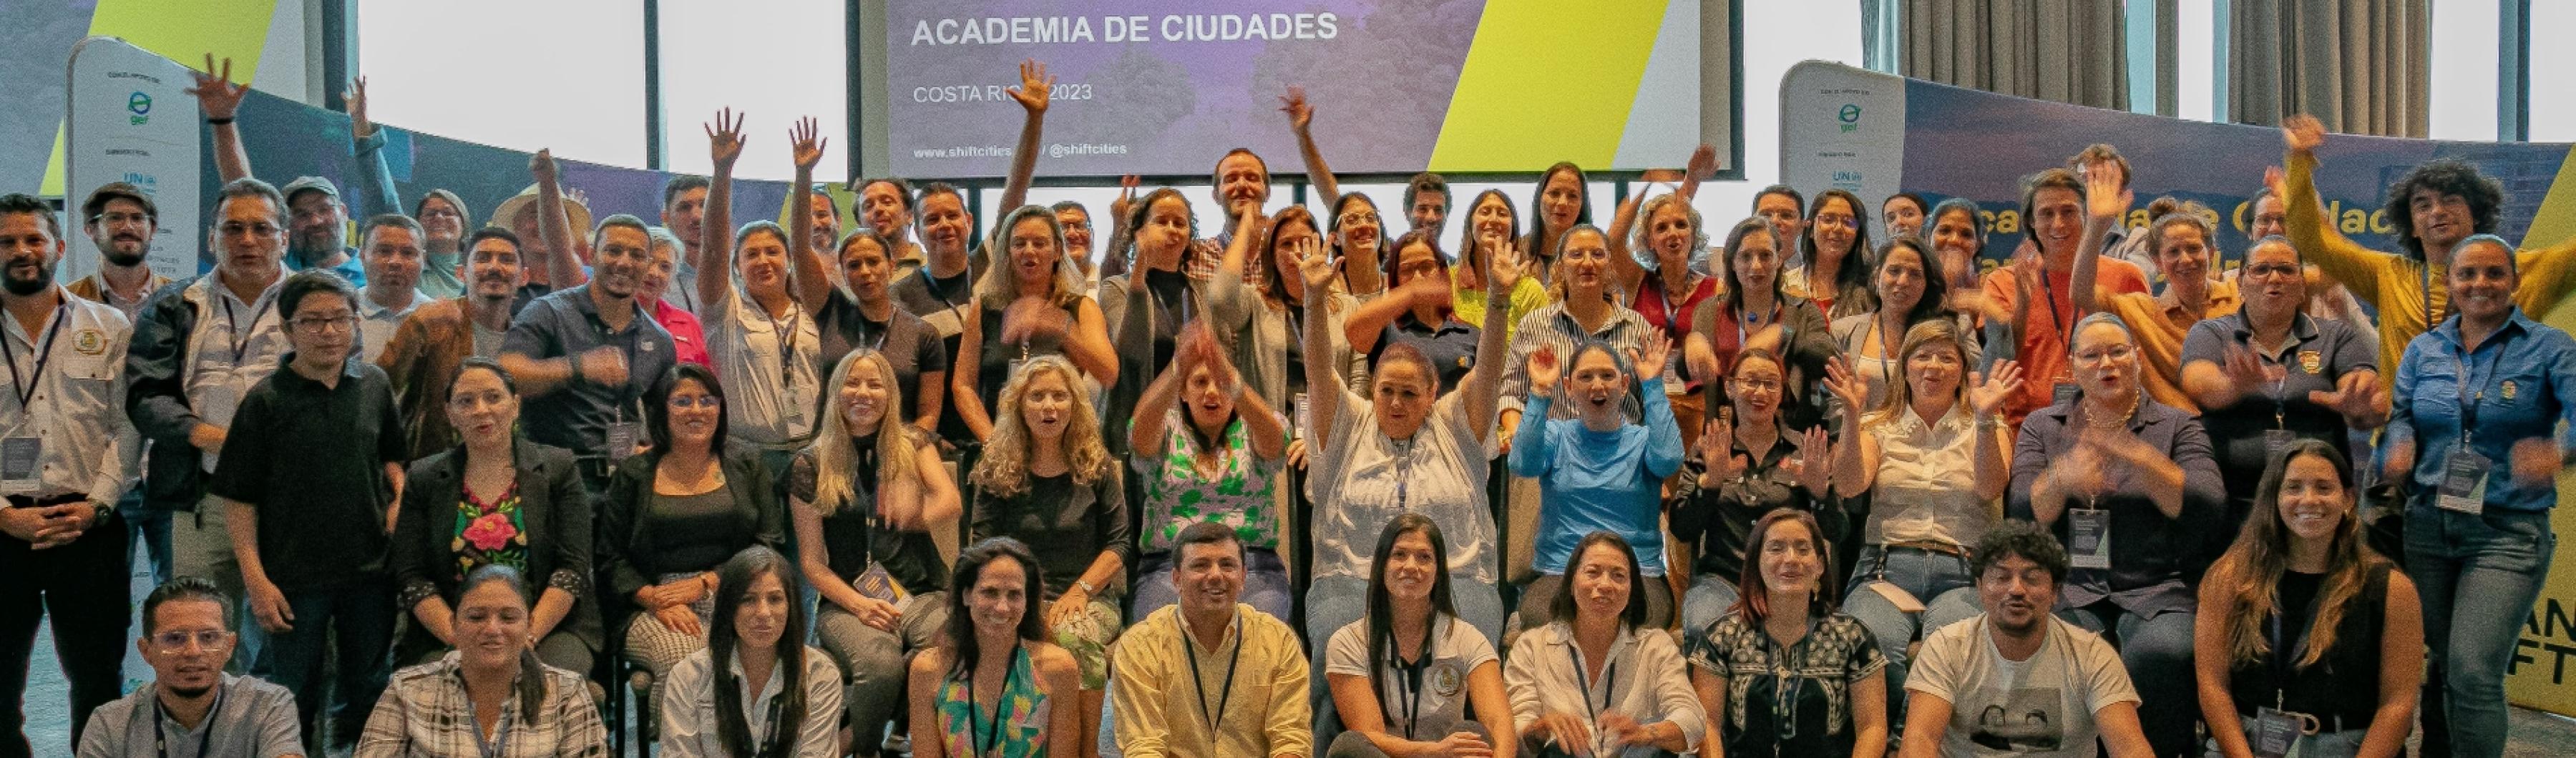 UrbanShift Participants et organisateurs de la Costa Rica City Academy